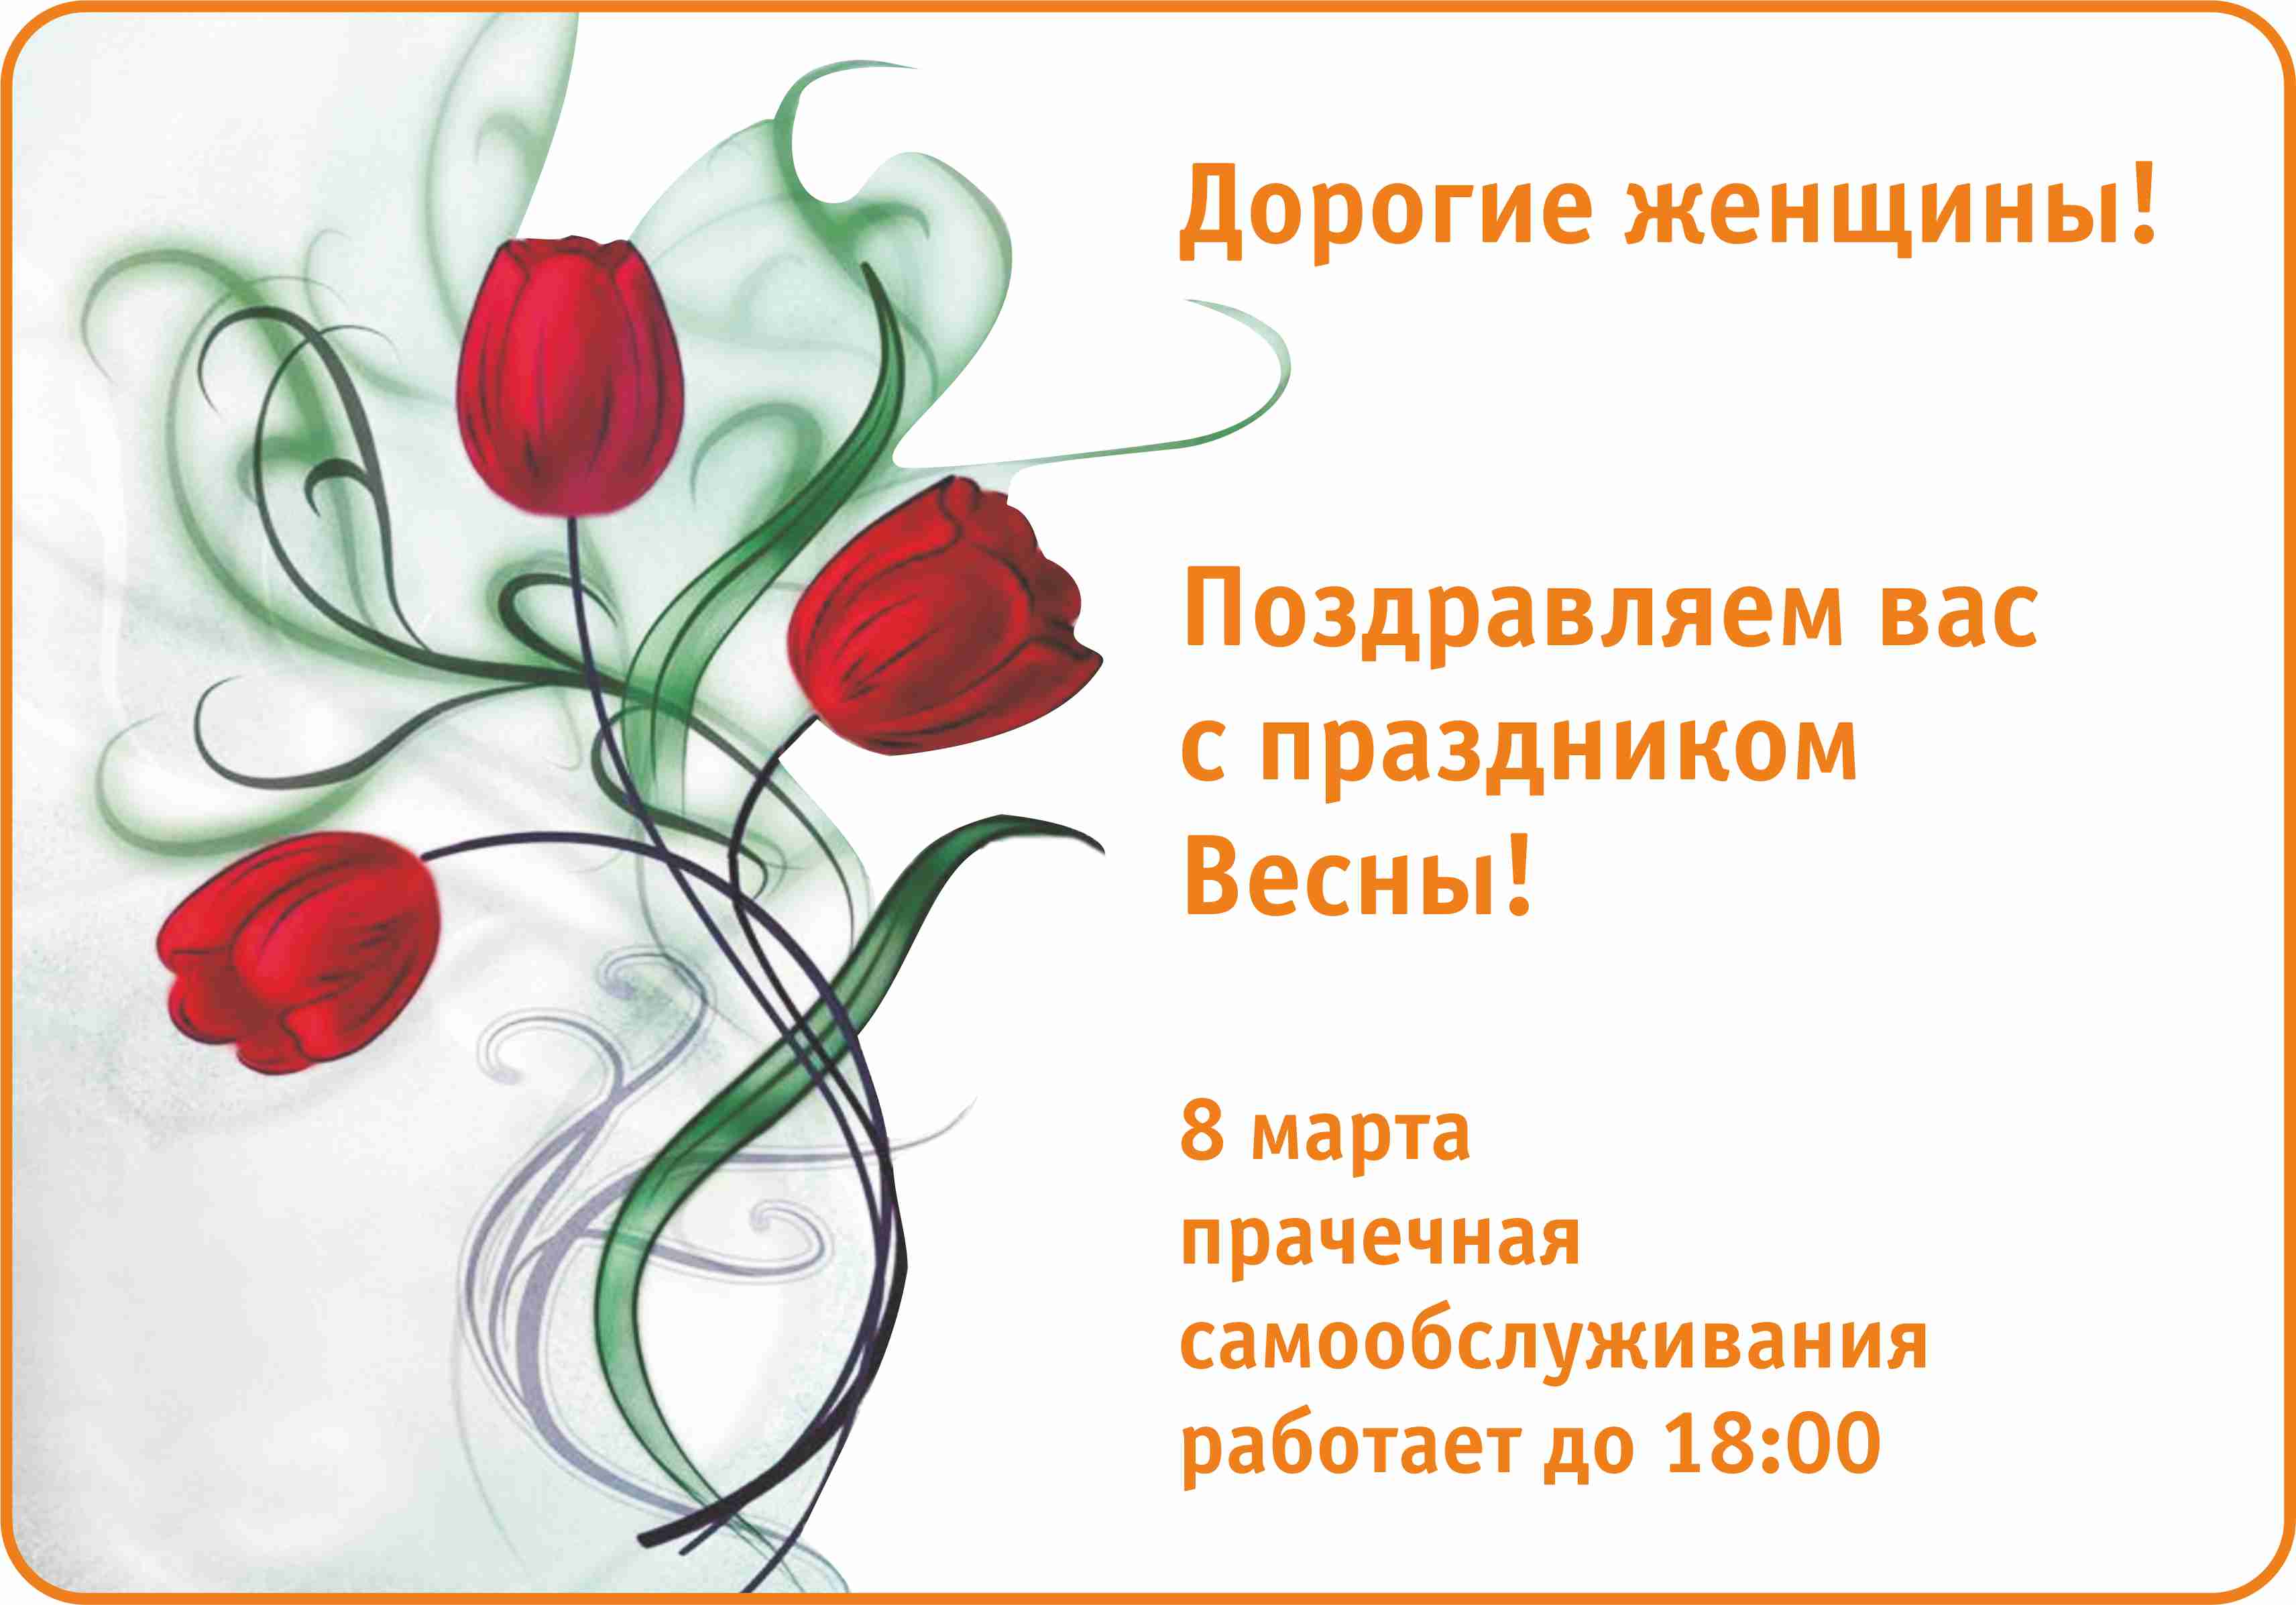 Прачечная самообслуживания в Перми "Место стирки" поздравляет всех женщин с праздником 8 марта!